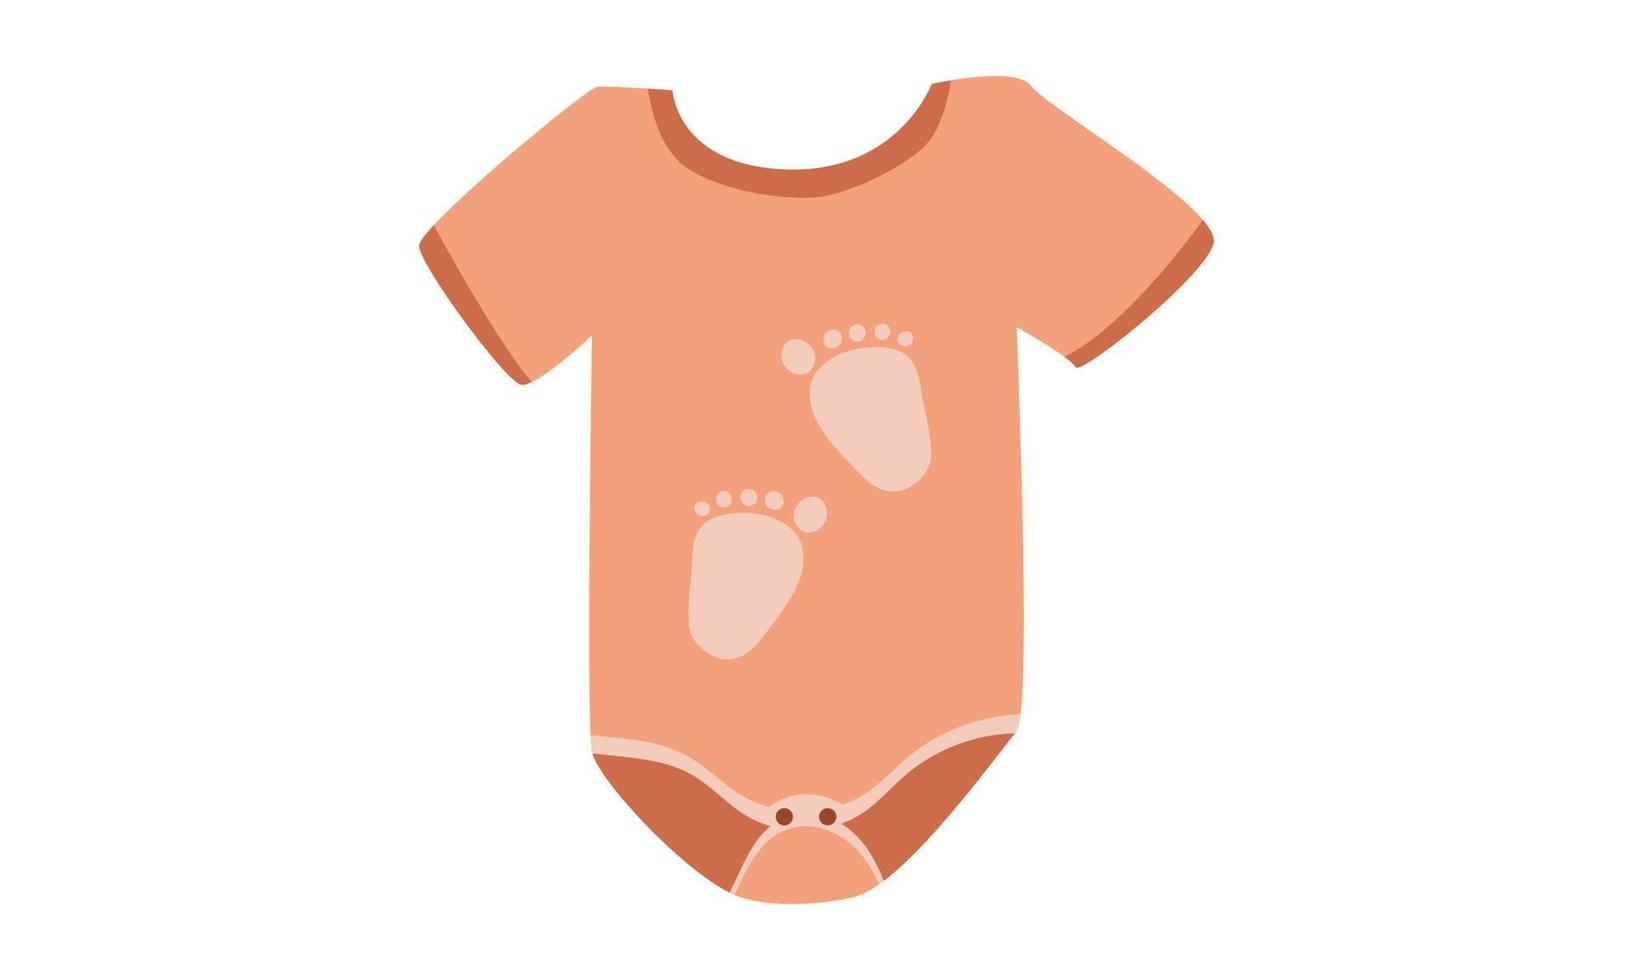 oranje baby Onesie clip art. gemakkelijk schattig baby Onesie met voetafdruk ontwerp vlak vector illustratie. baby bodysuit, lichaam kinderen, baby shirt, rompertje, kleren voor pasgeborenen tekenfilm tekening